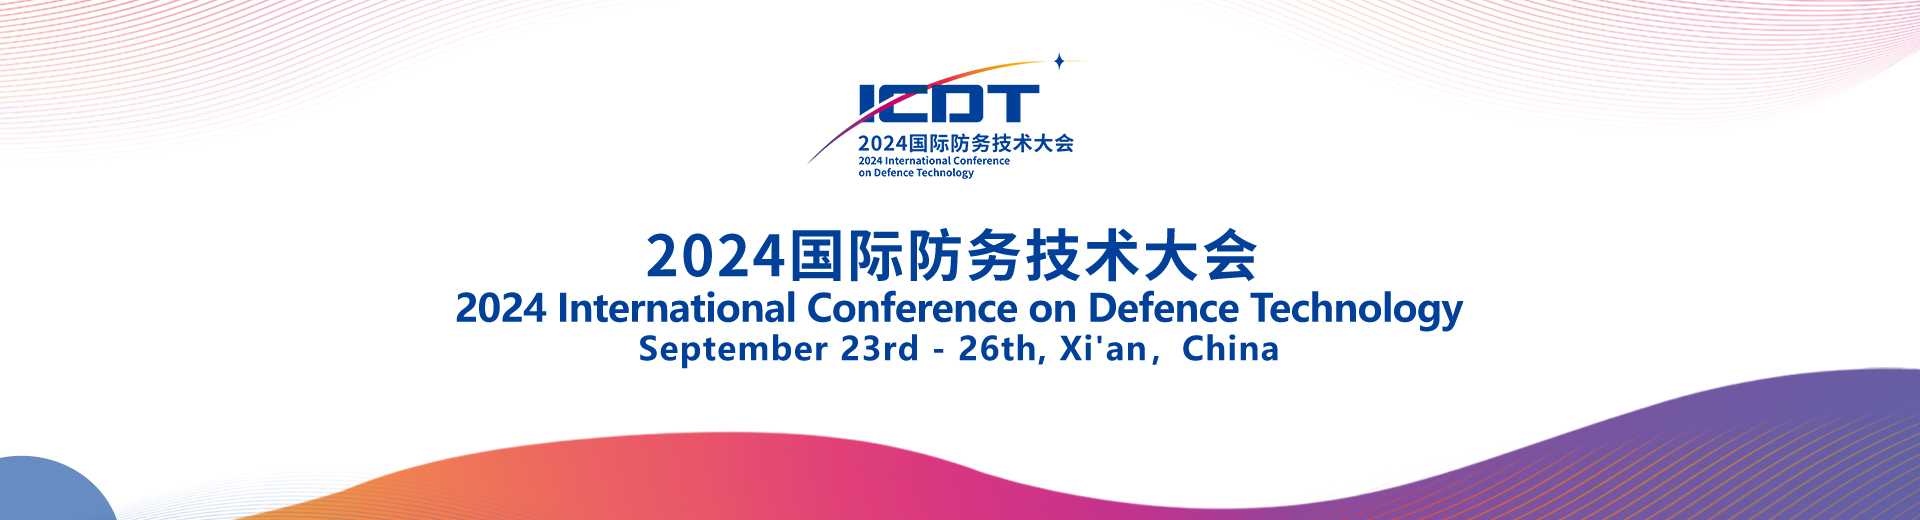 2024国际防务技术大会